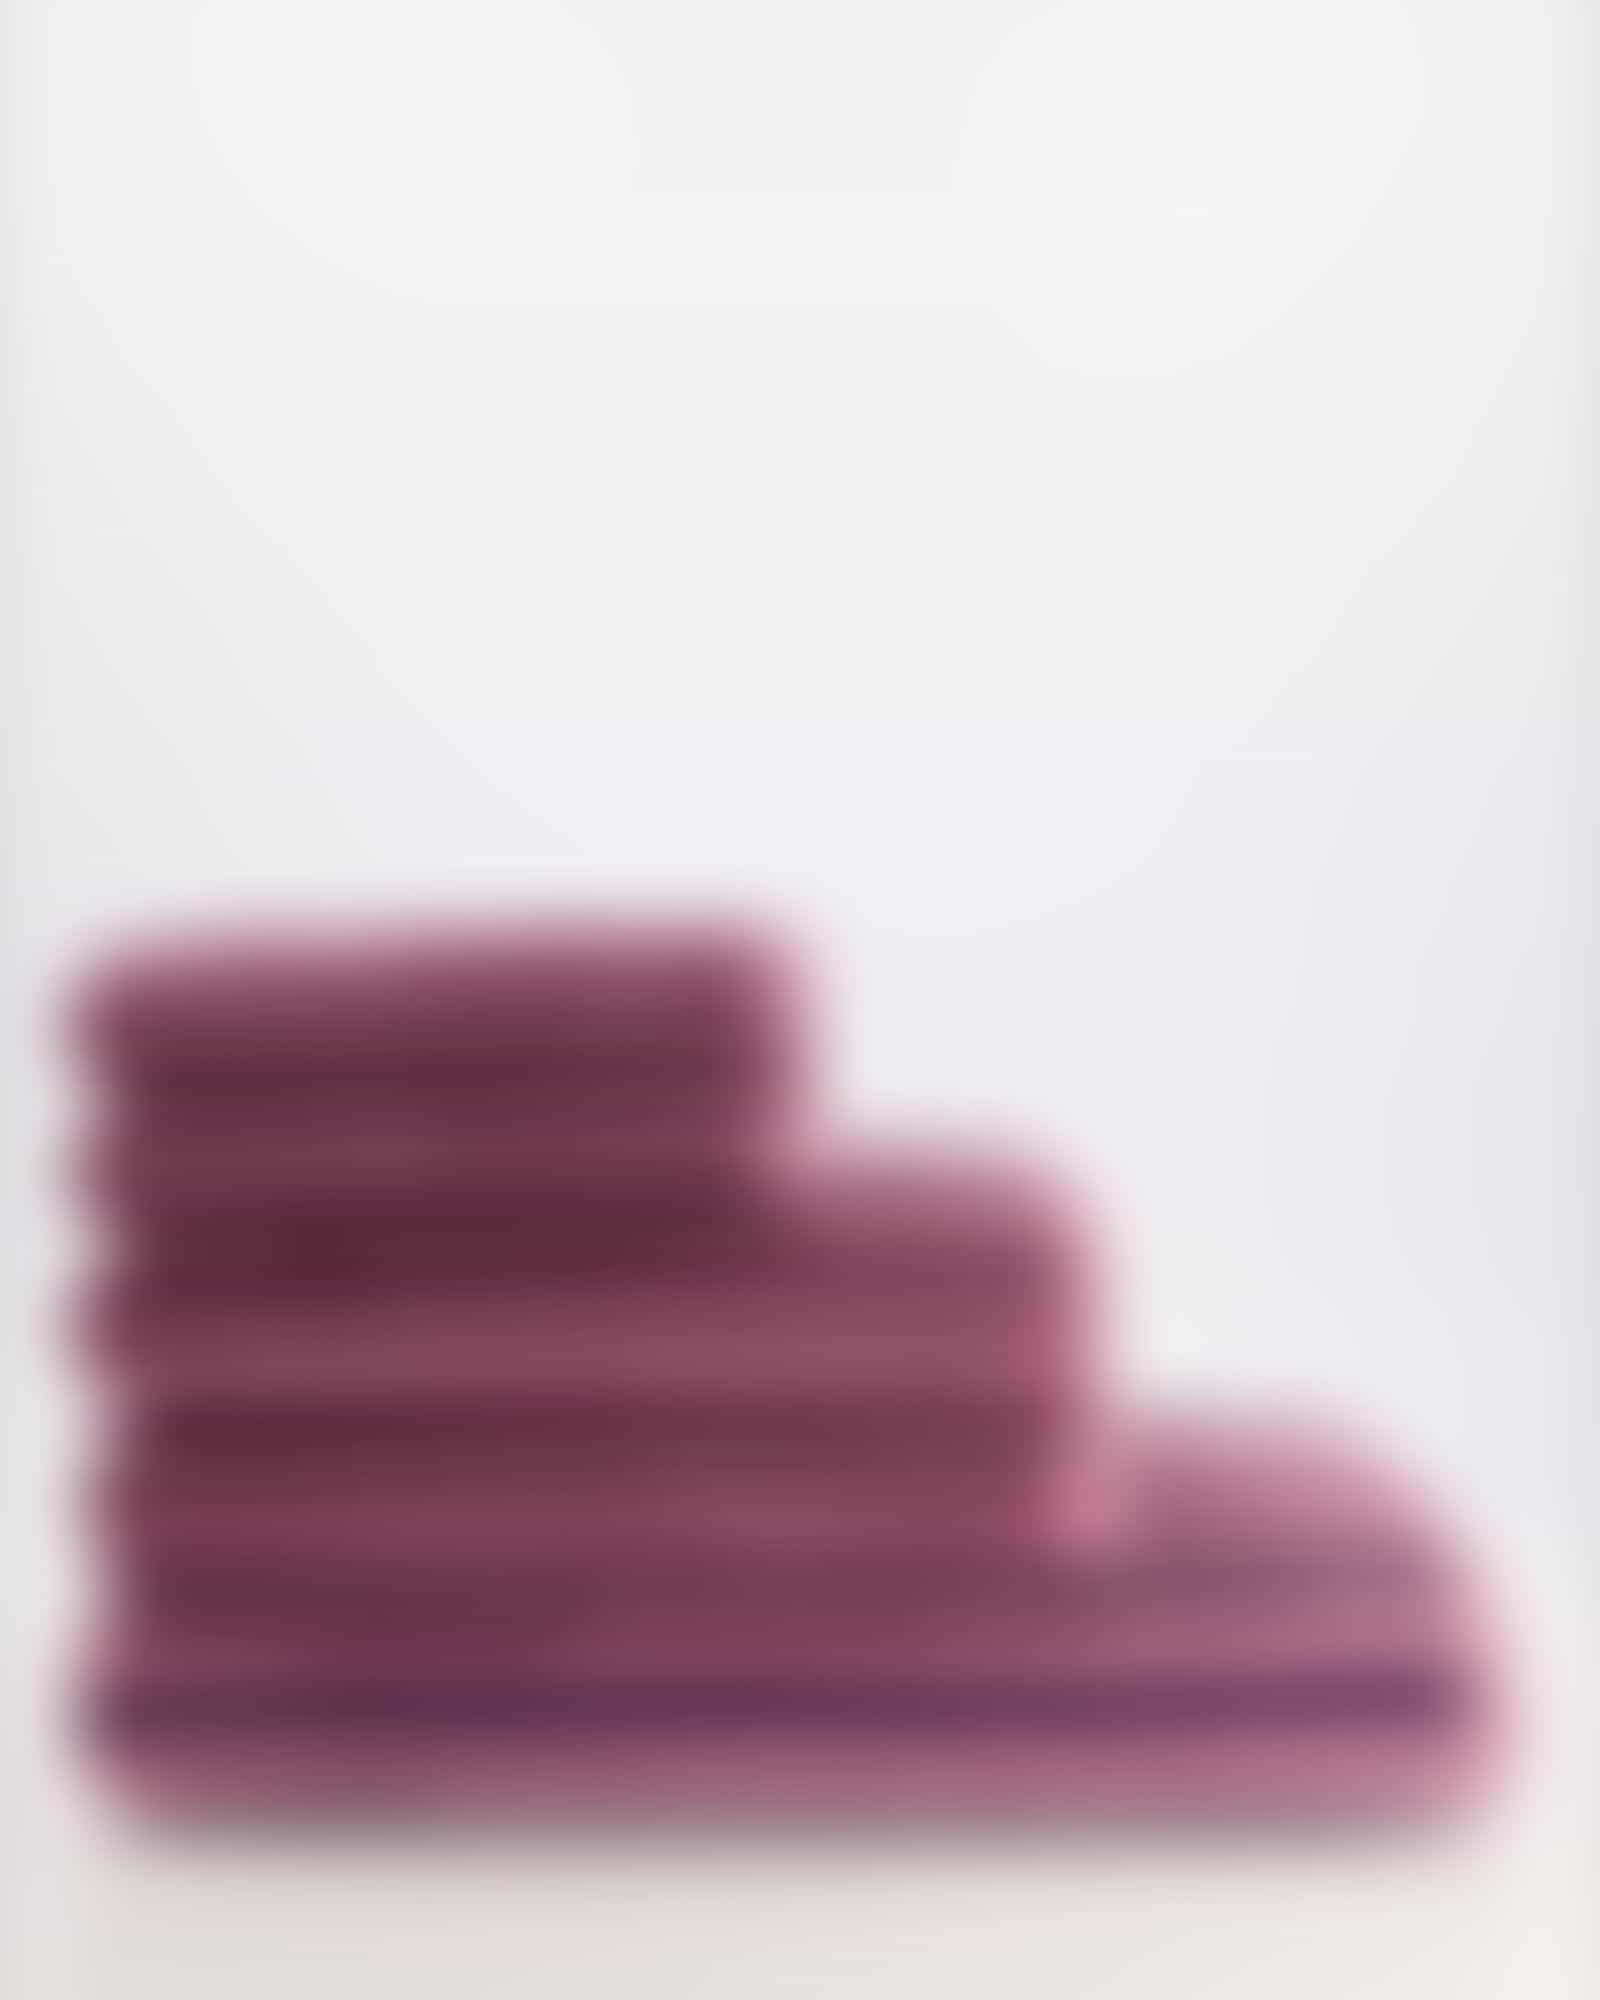 Cawö Handtücher Delight Streifen 6218 - Farbe: blush - 22 - Handtuch 50x100 cm